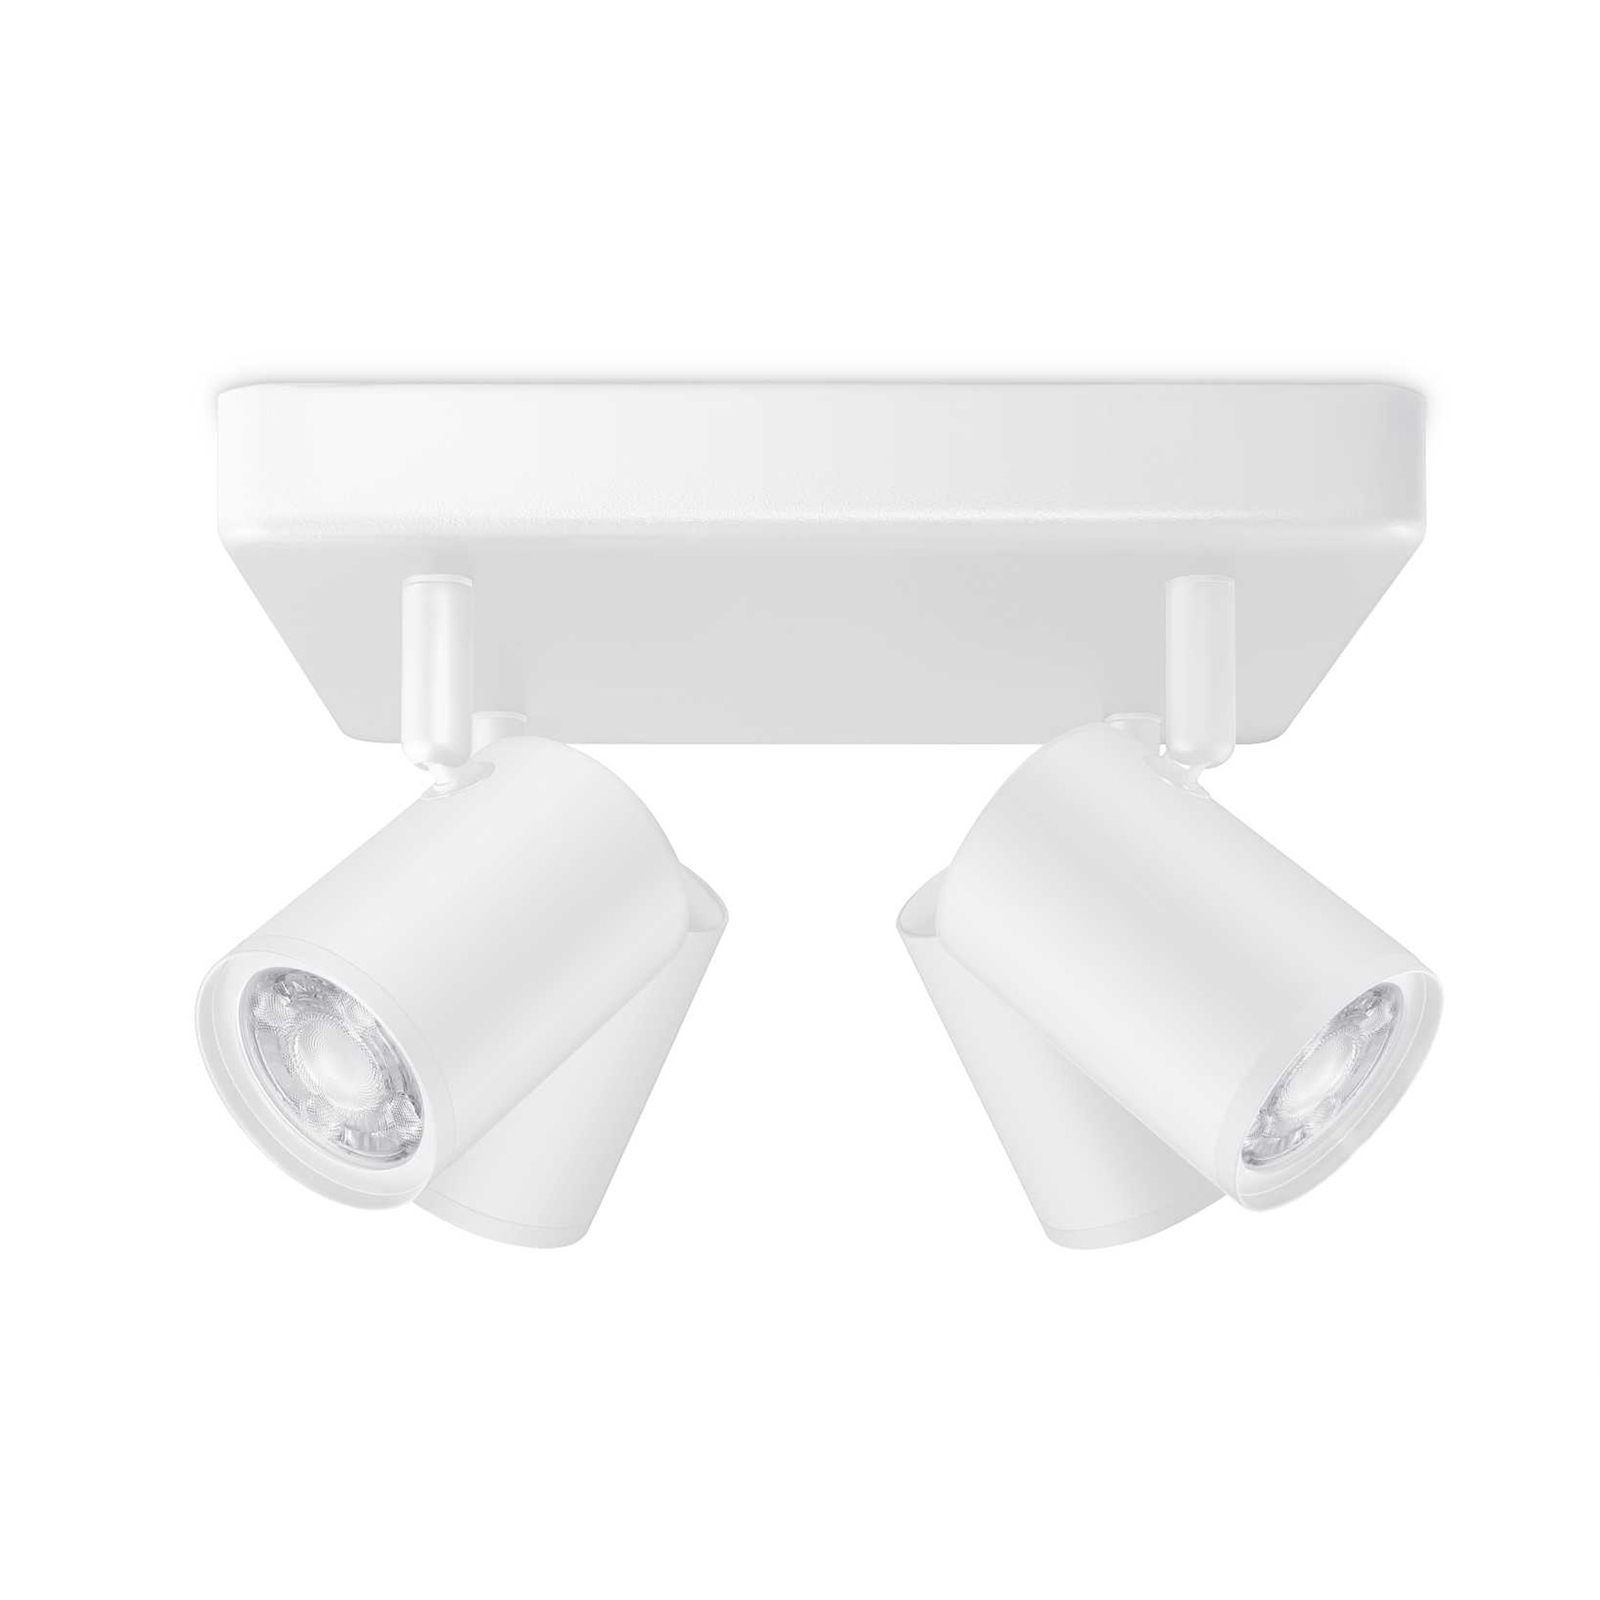 WiZ LED-kattospotti Imageo, 4fl neliön valkoinen